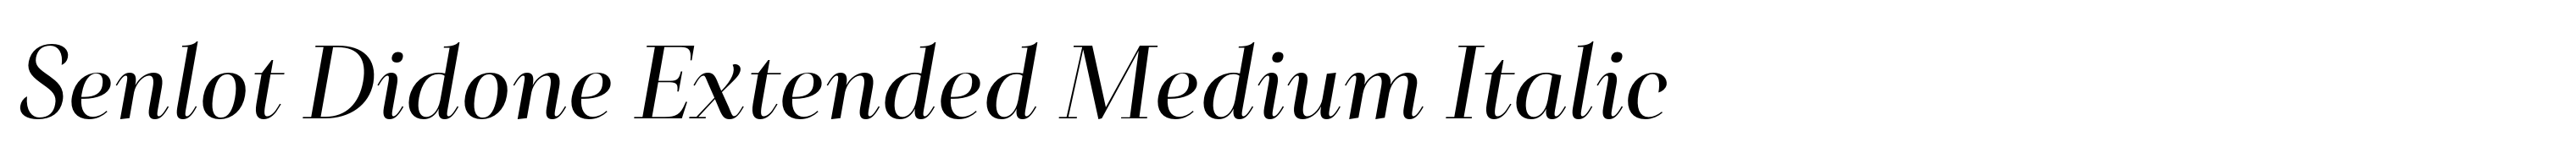 Senlot Didone Extended Medium Italic